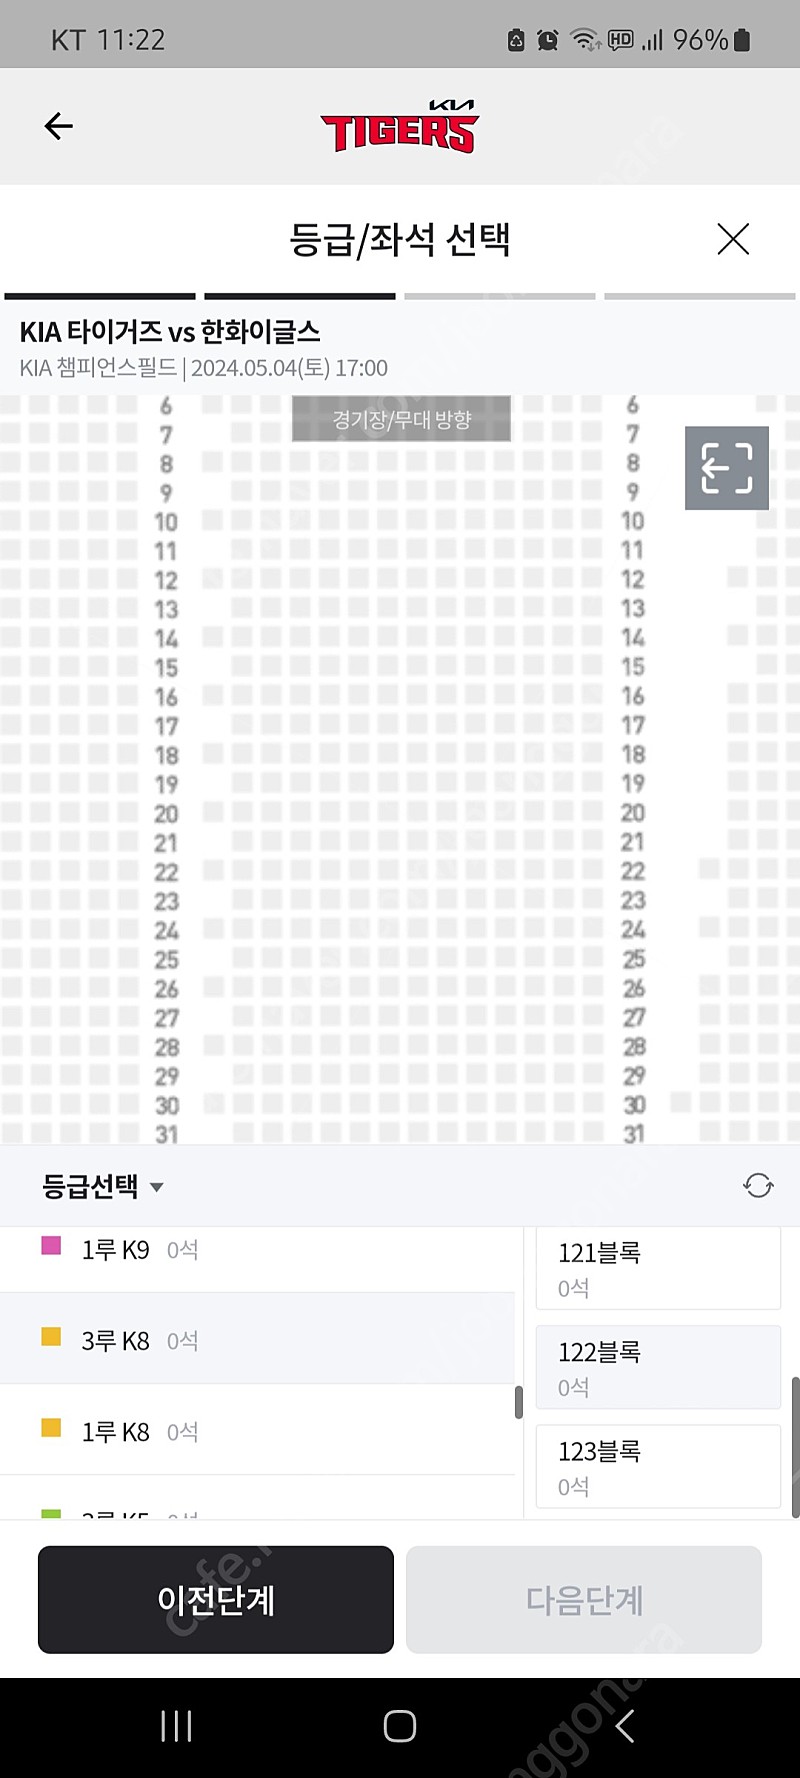 기아타이거즈 티켓 5/24 금요일 3루 응원석 4연석 (2연석가능) 팝니다